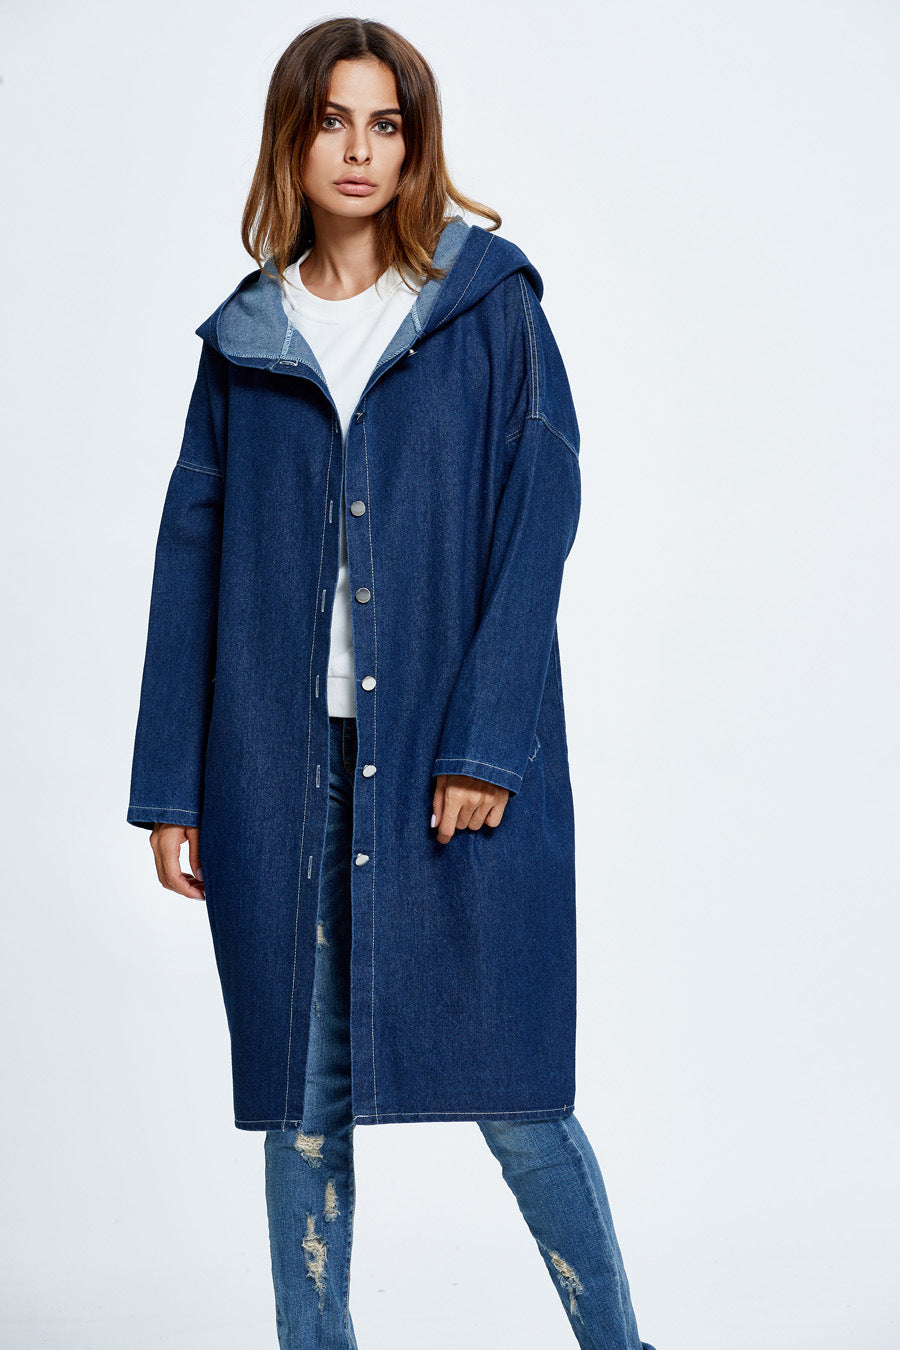 FZ Women's Popular Hooded Denim Trench Coat Jacket - FZwear